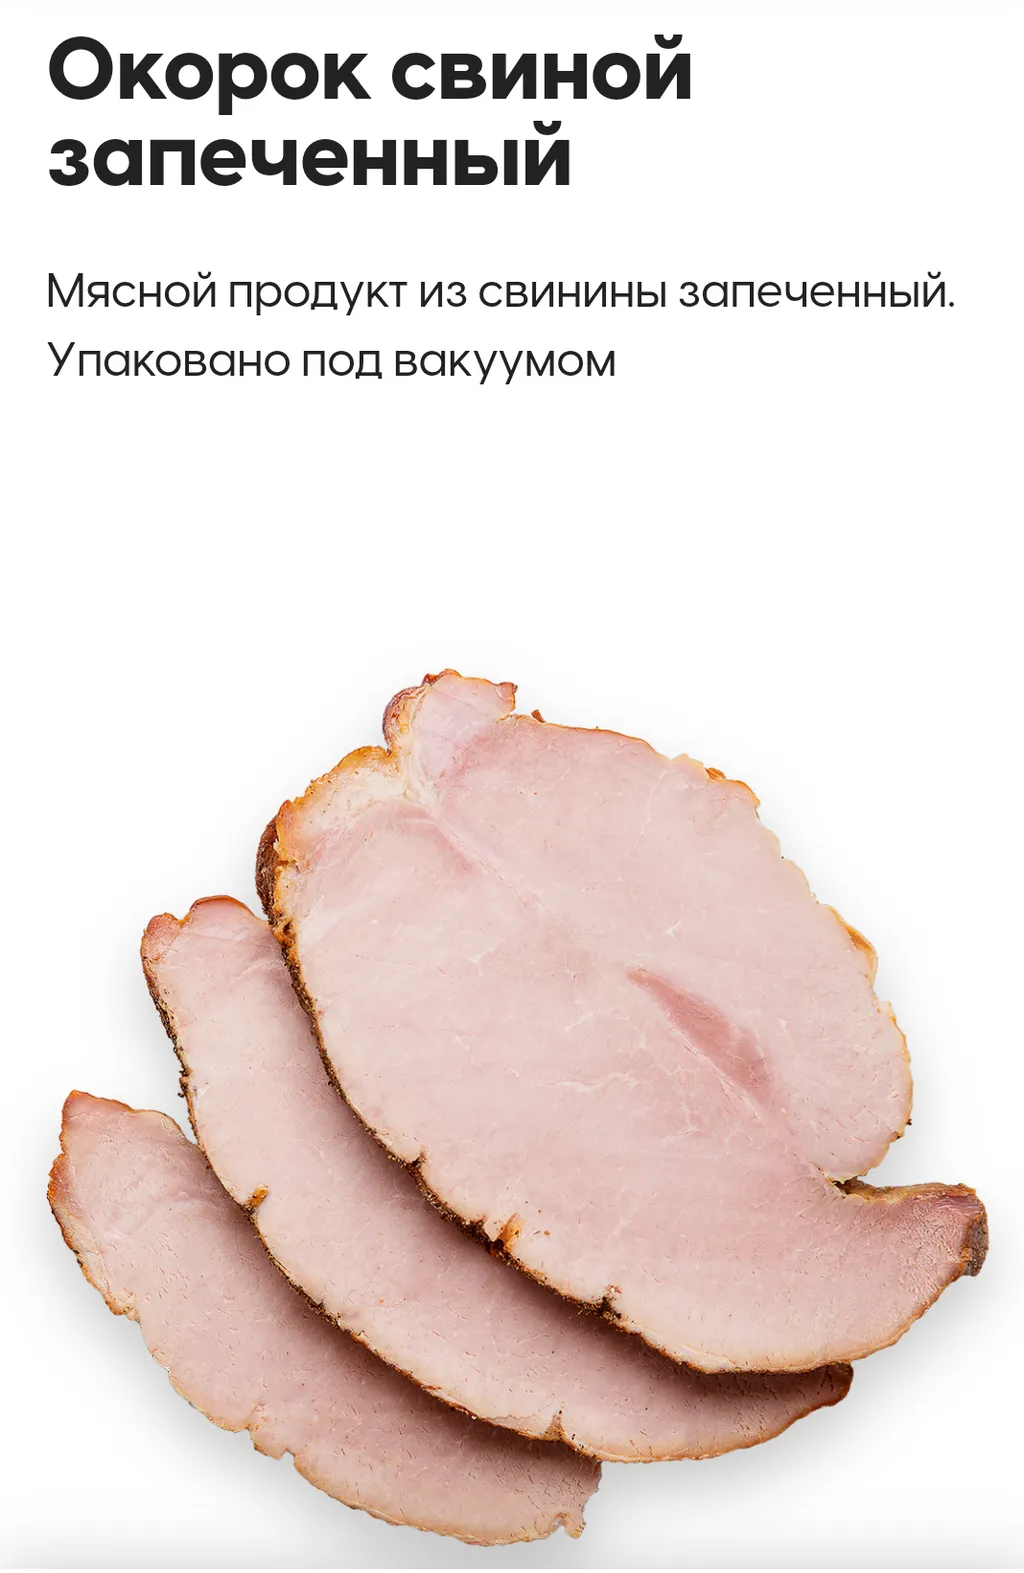 продажа колбасной продукции в Симферополе и республике Крым 5